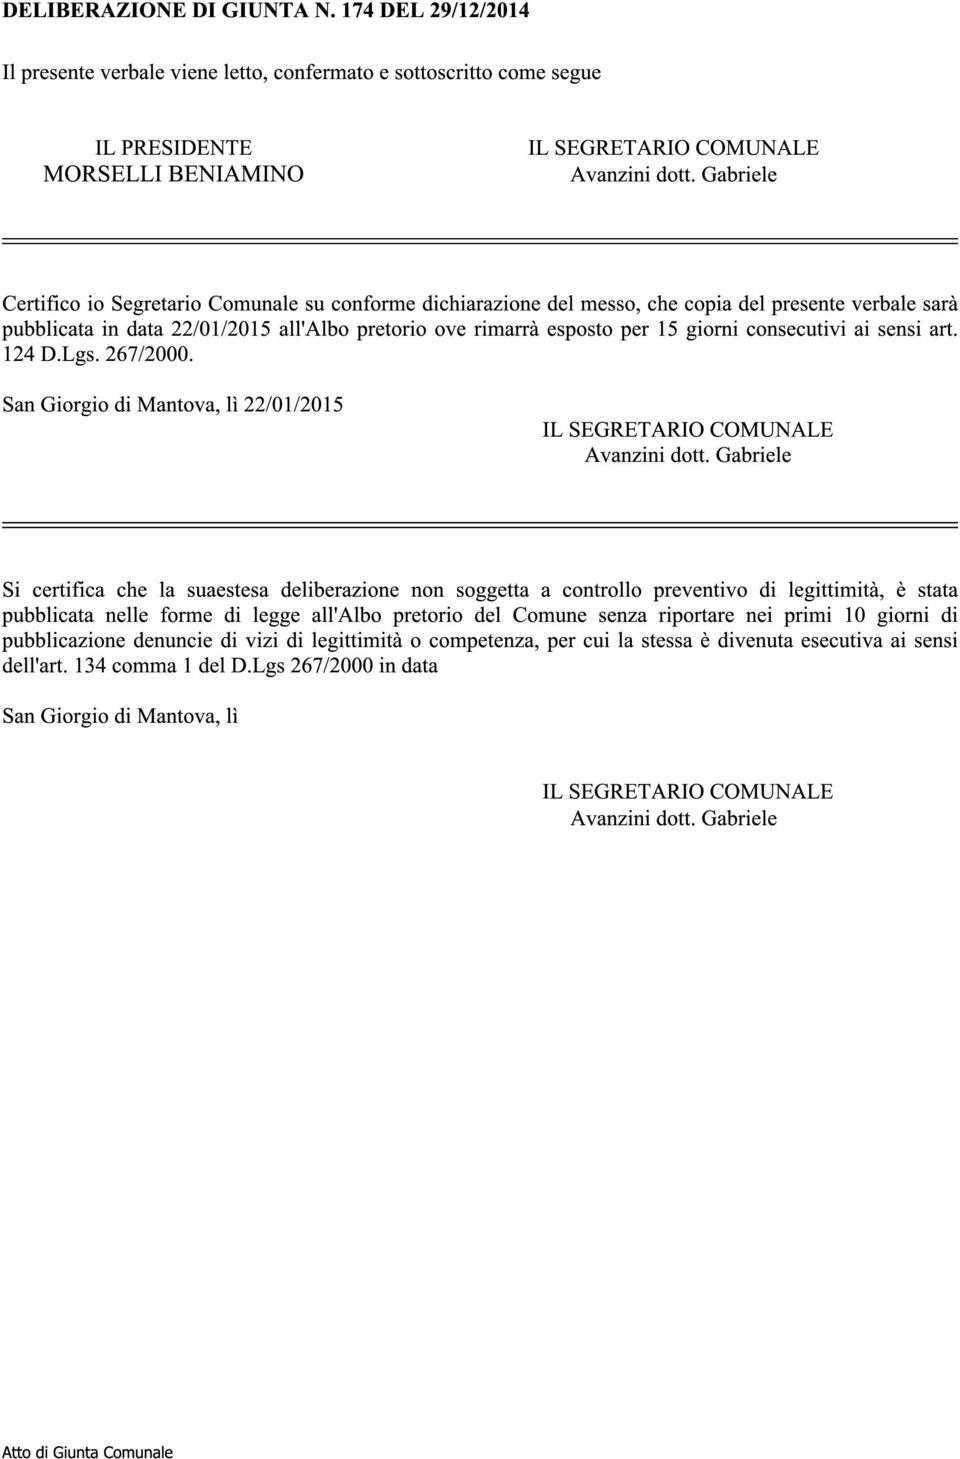 consecutivi ai sensi art. 124 D.Lgs. 267/2000. San Giorgio di Mantova, lì 22/01/2015 IL SEGRETARIO COMUNALE Avanzini dott.